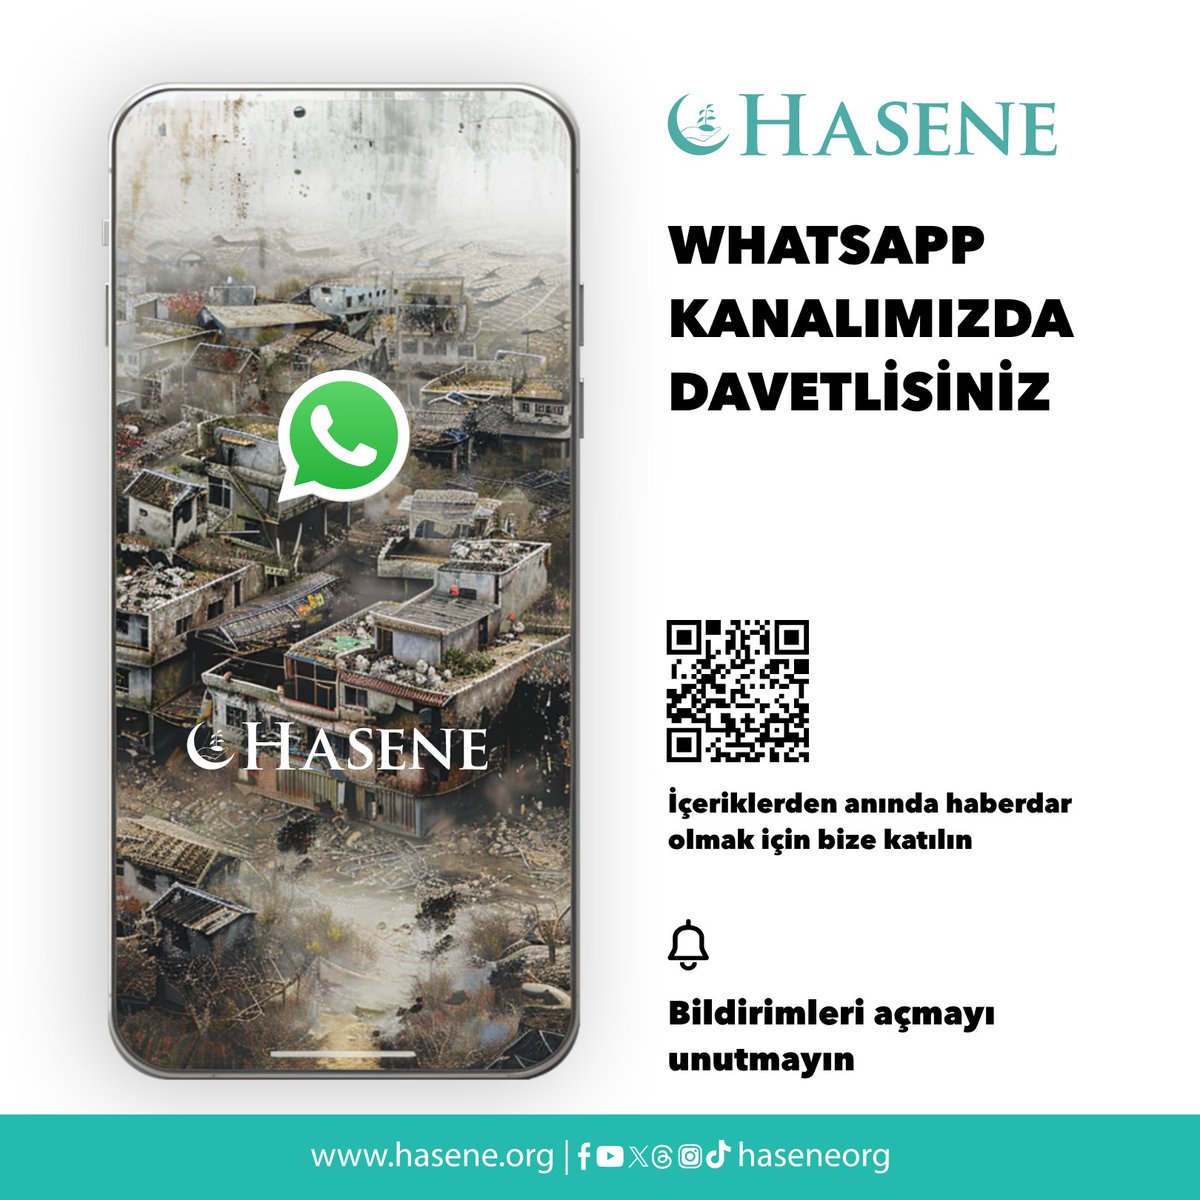 Gelişmelerden anında haberdar olmak için bize katılın ve bildirimleri açmayı unutmayın. 🤳🏻bit.ly/4dgyrwl #Hasene #WhatsApp #Social_Media